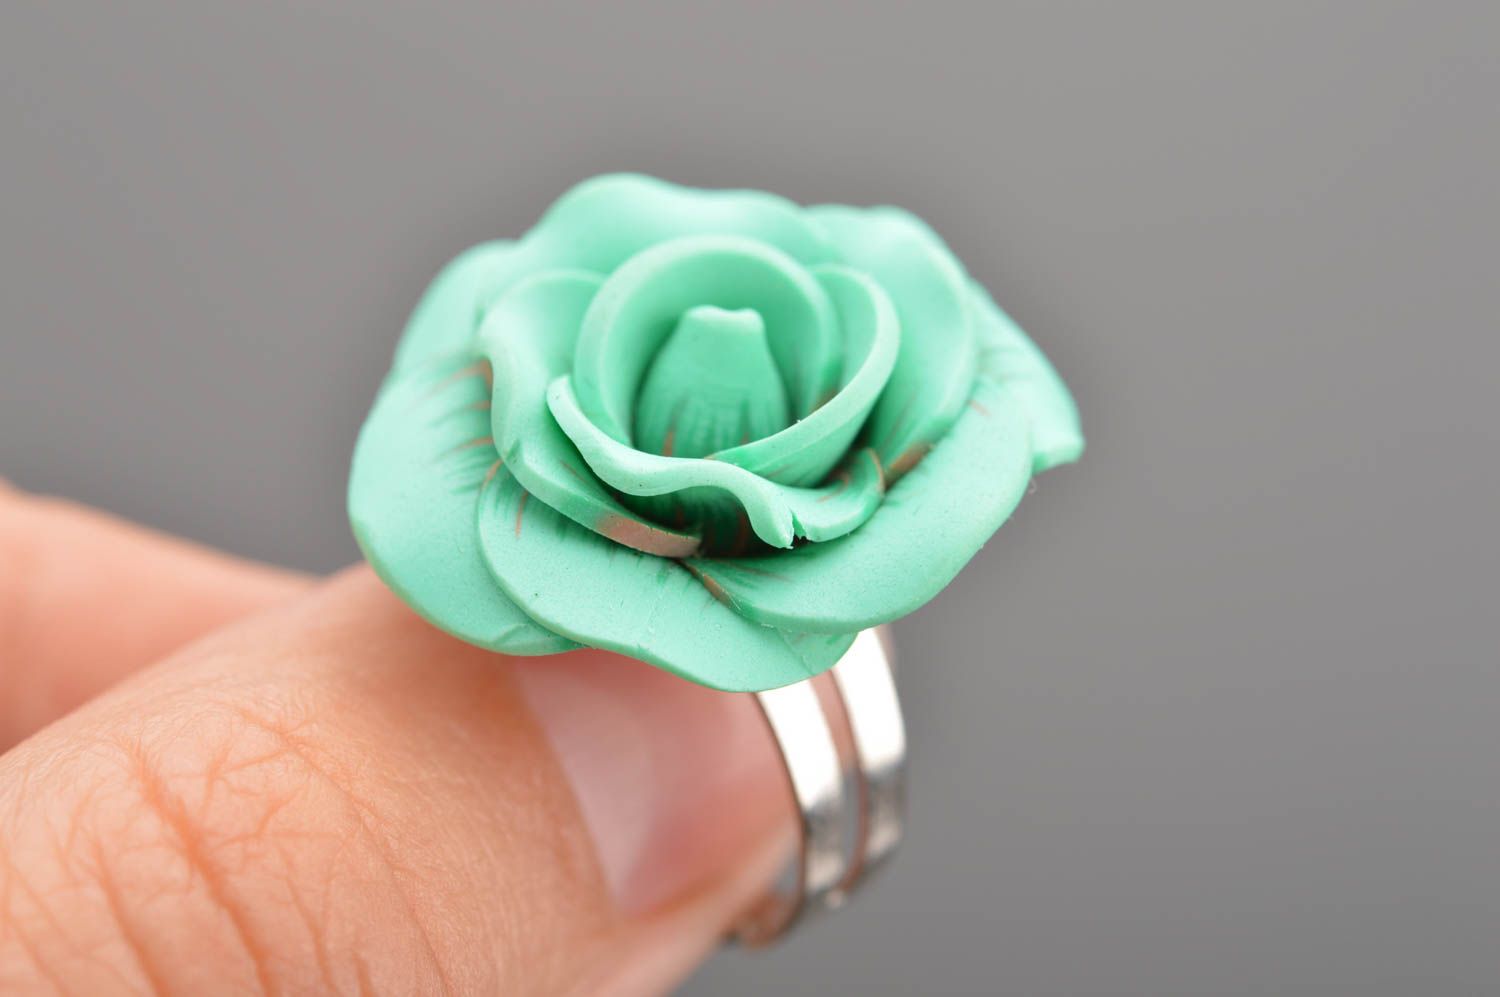 Кольцо цветок из полимерной глины зеленое в виде розы крупное ручная работа фото 2